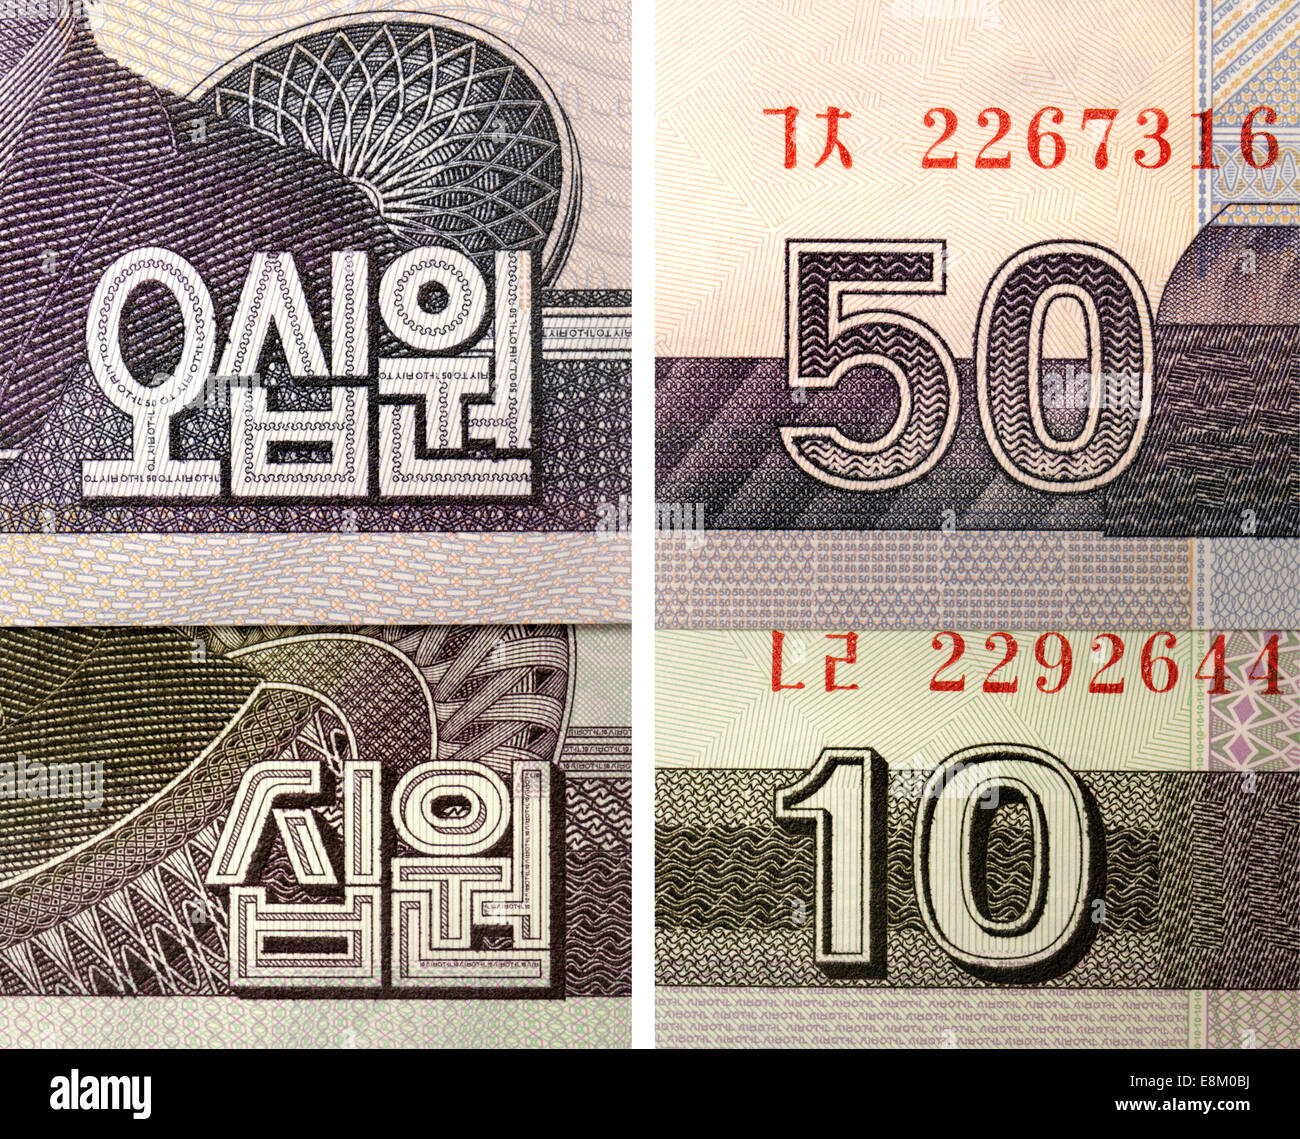 Dettaglio da nord coreano di banconote che mostra il Coreano (Hangul) con i numeri 10 e 50 Foto Stock